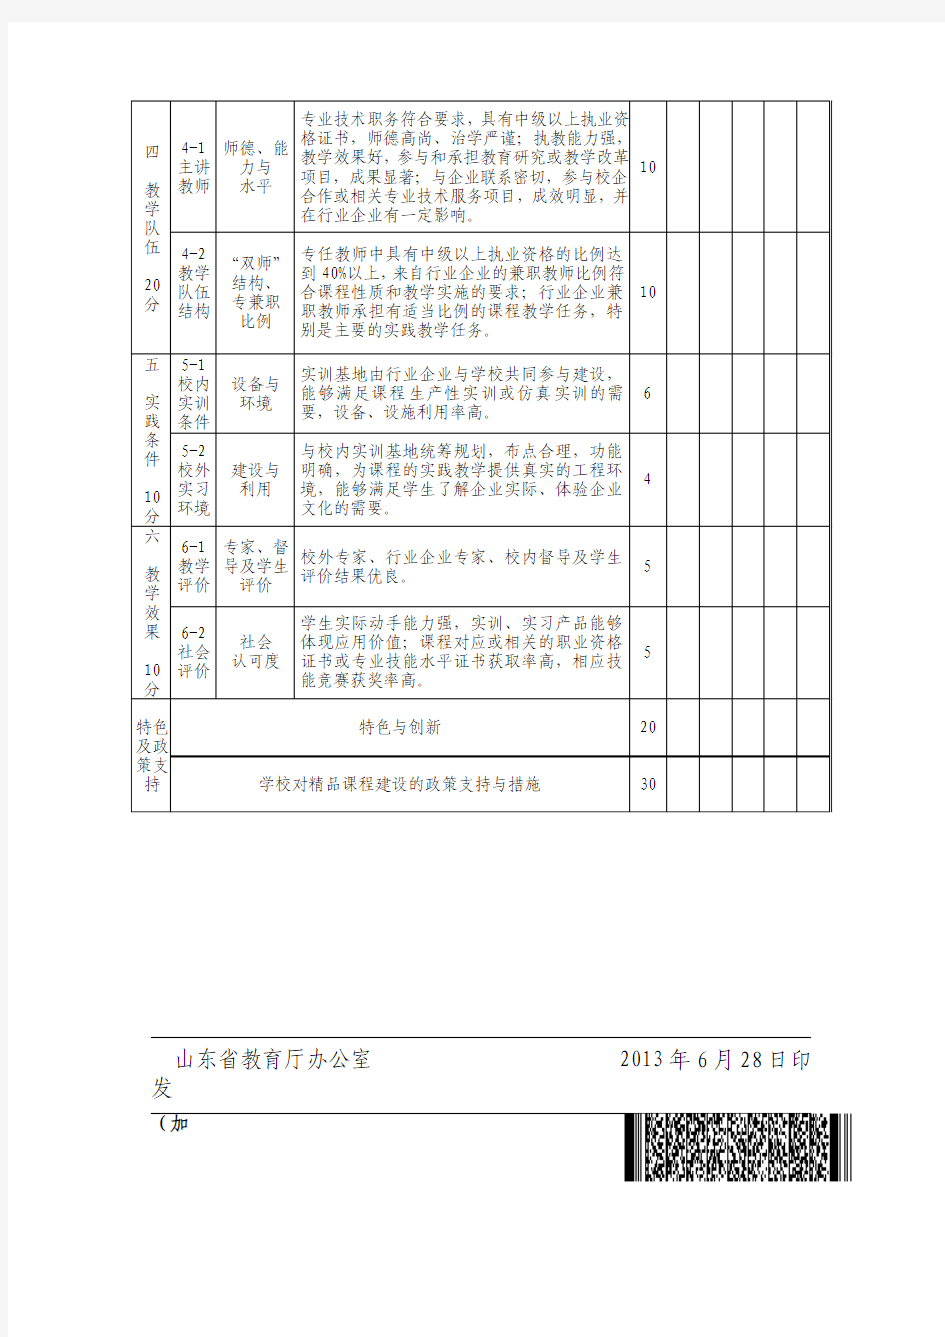 山东省高等职业学校精品课程评审指标